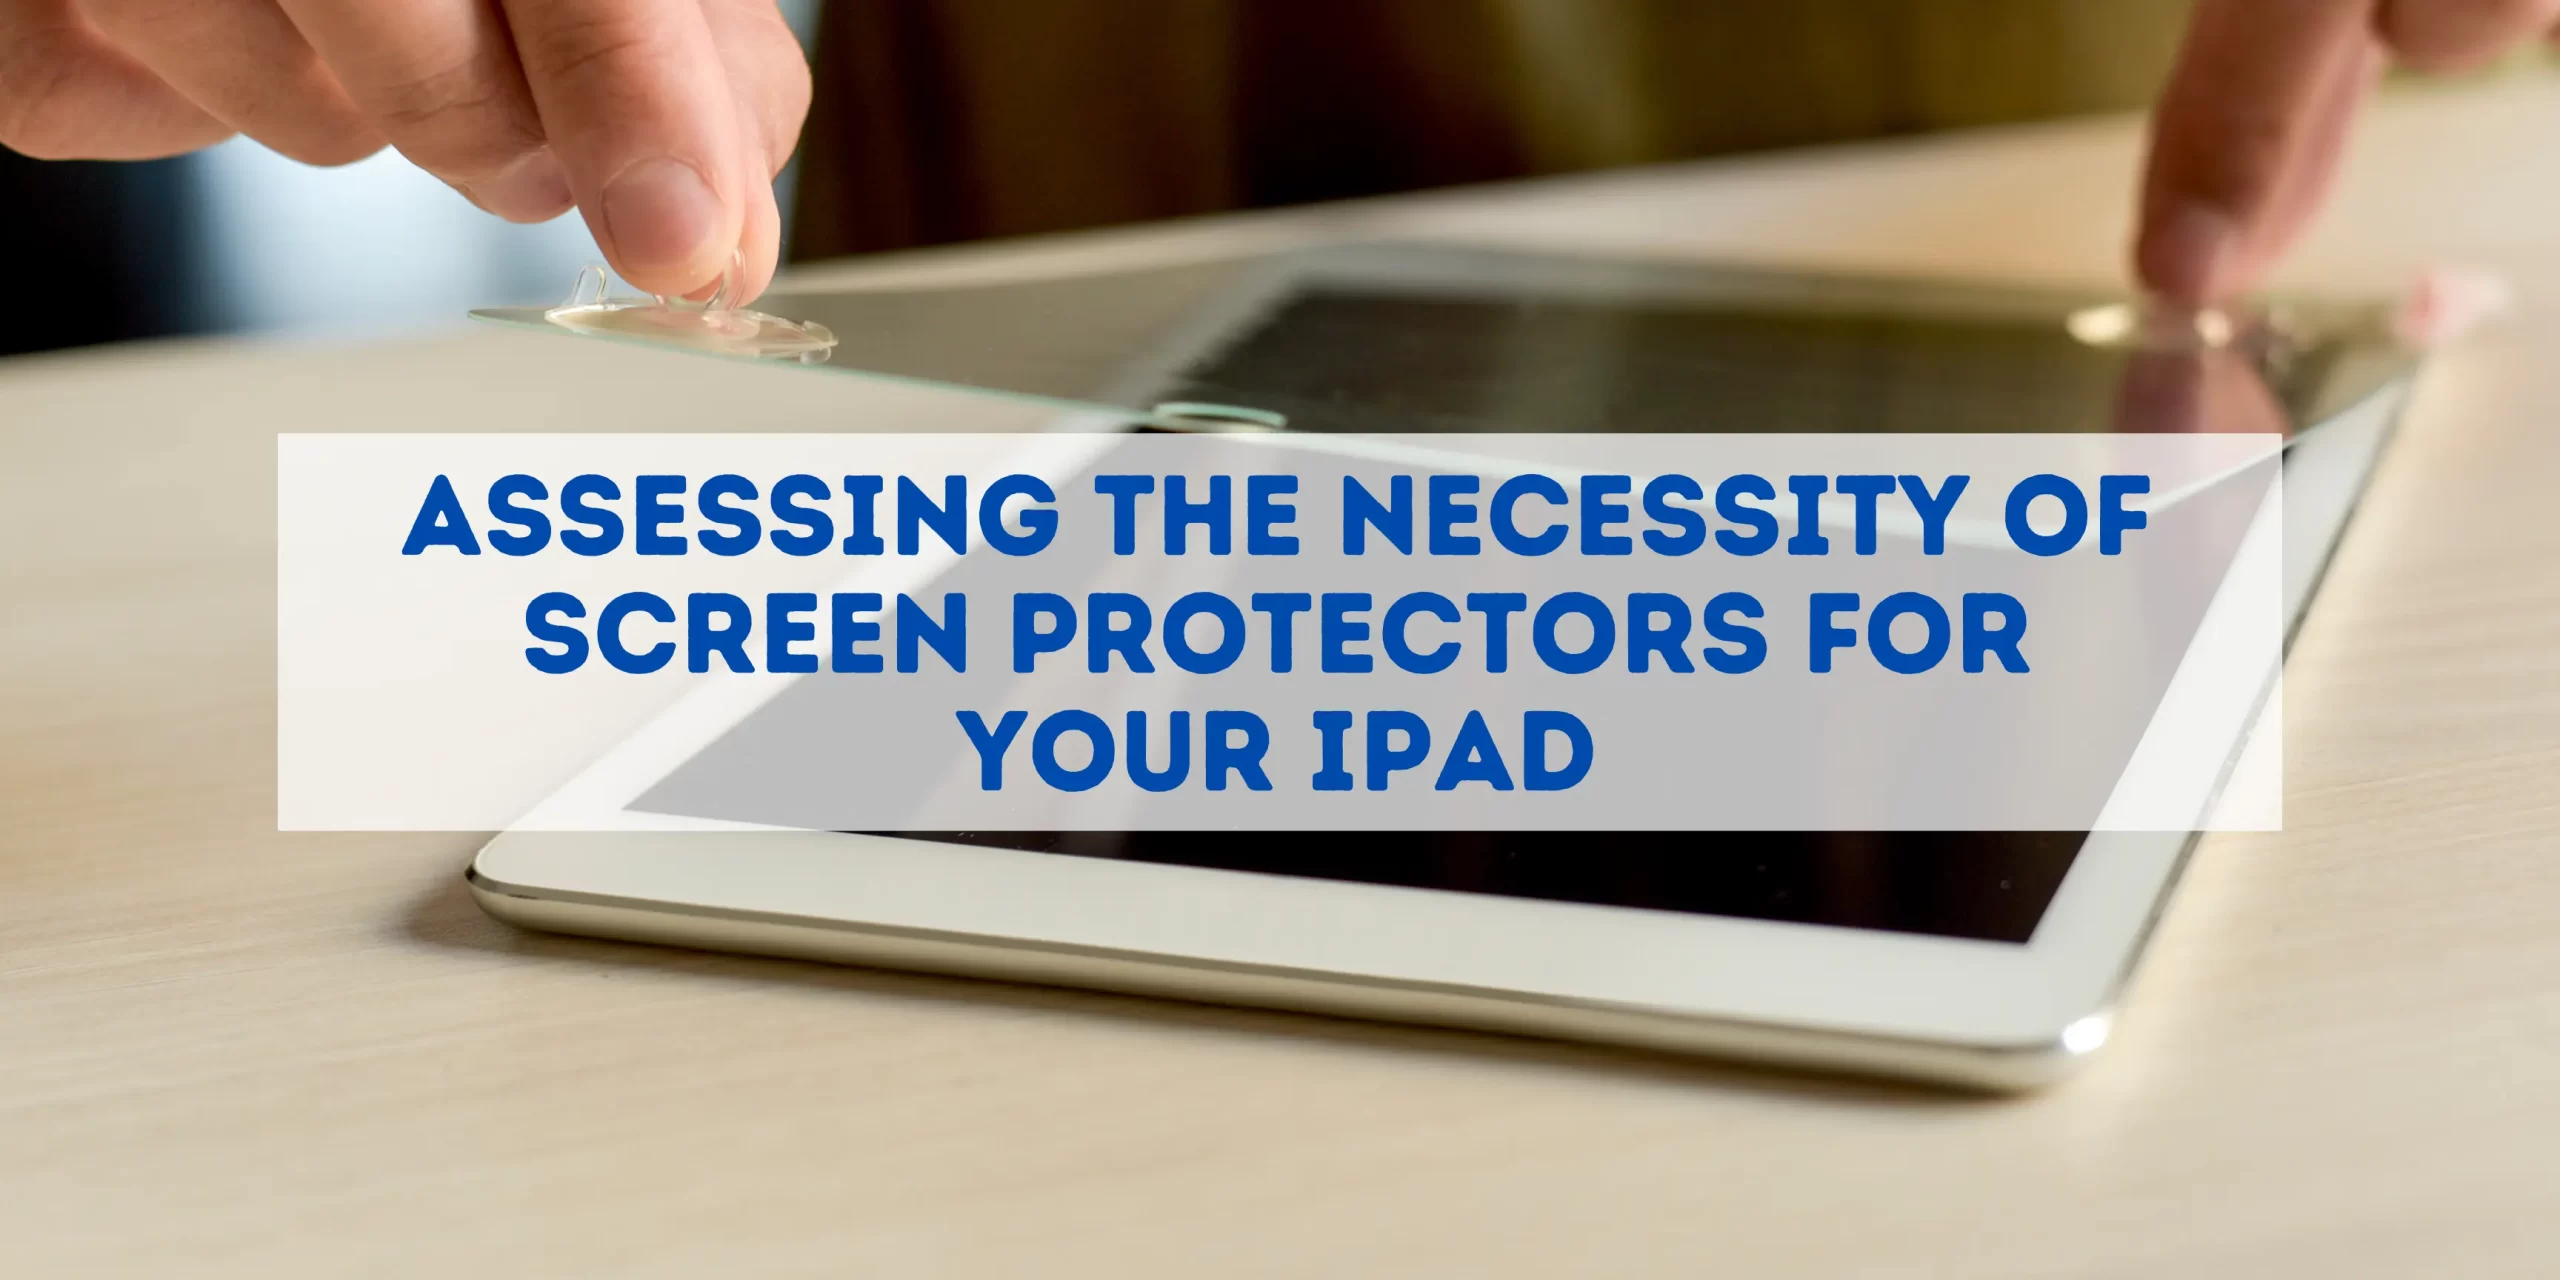 does ipad need screen protector